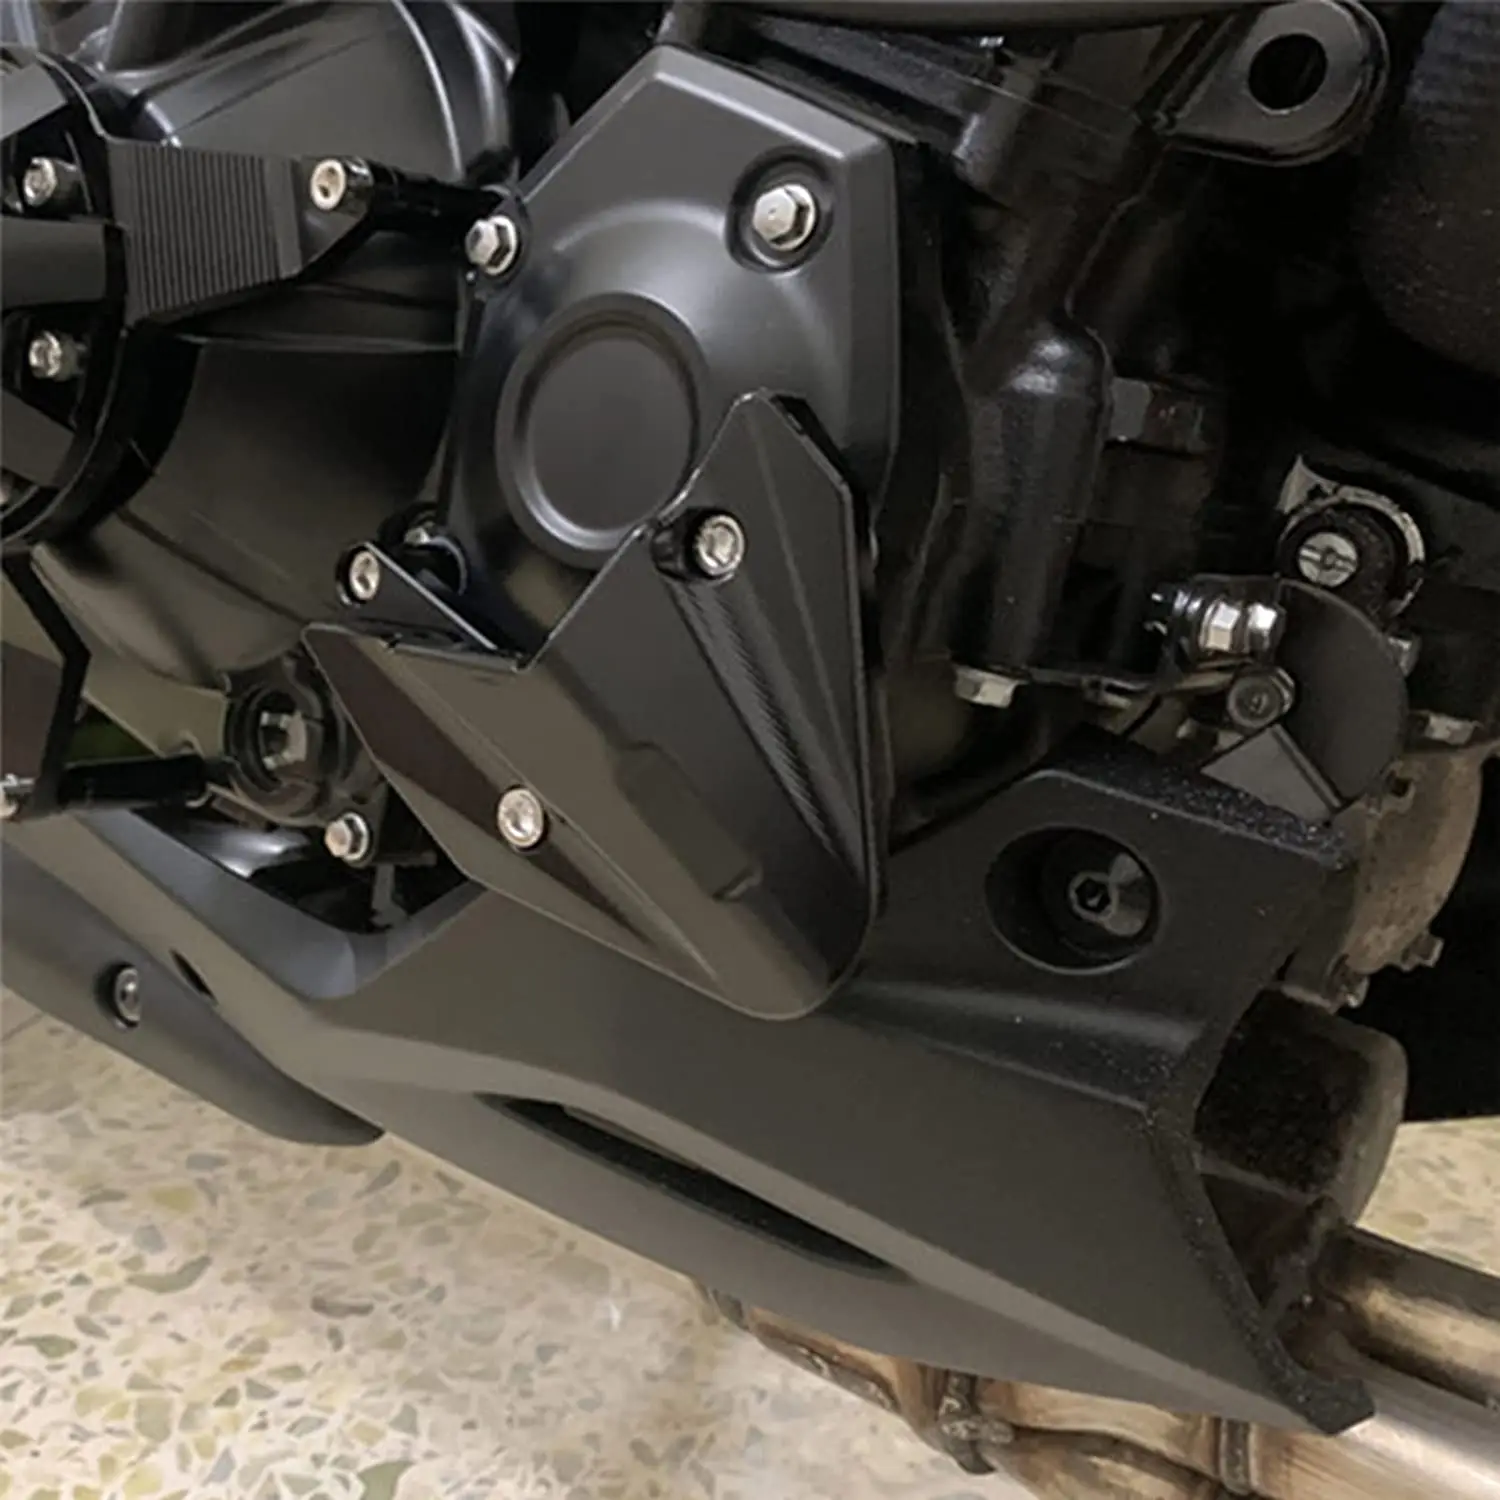 

For KAWASAKI Z900 2017-2021 Z1000 Z1000R Z1000 R 2010-2021 Motorcycle Frame Slider Engine Guard Protector Case Cover Crash Pad